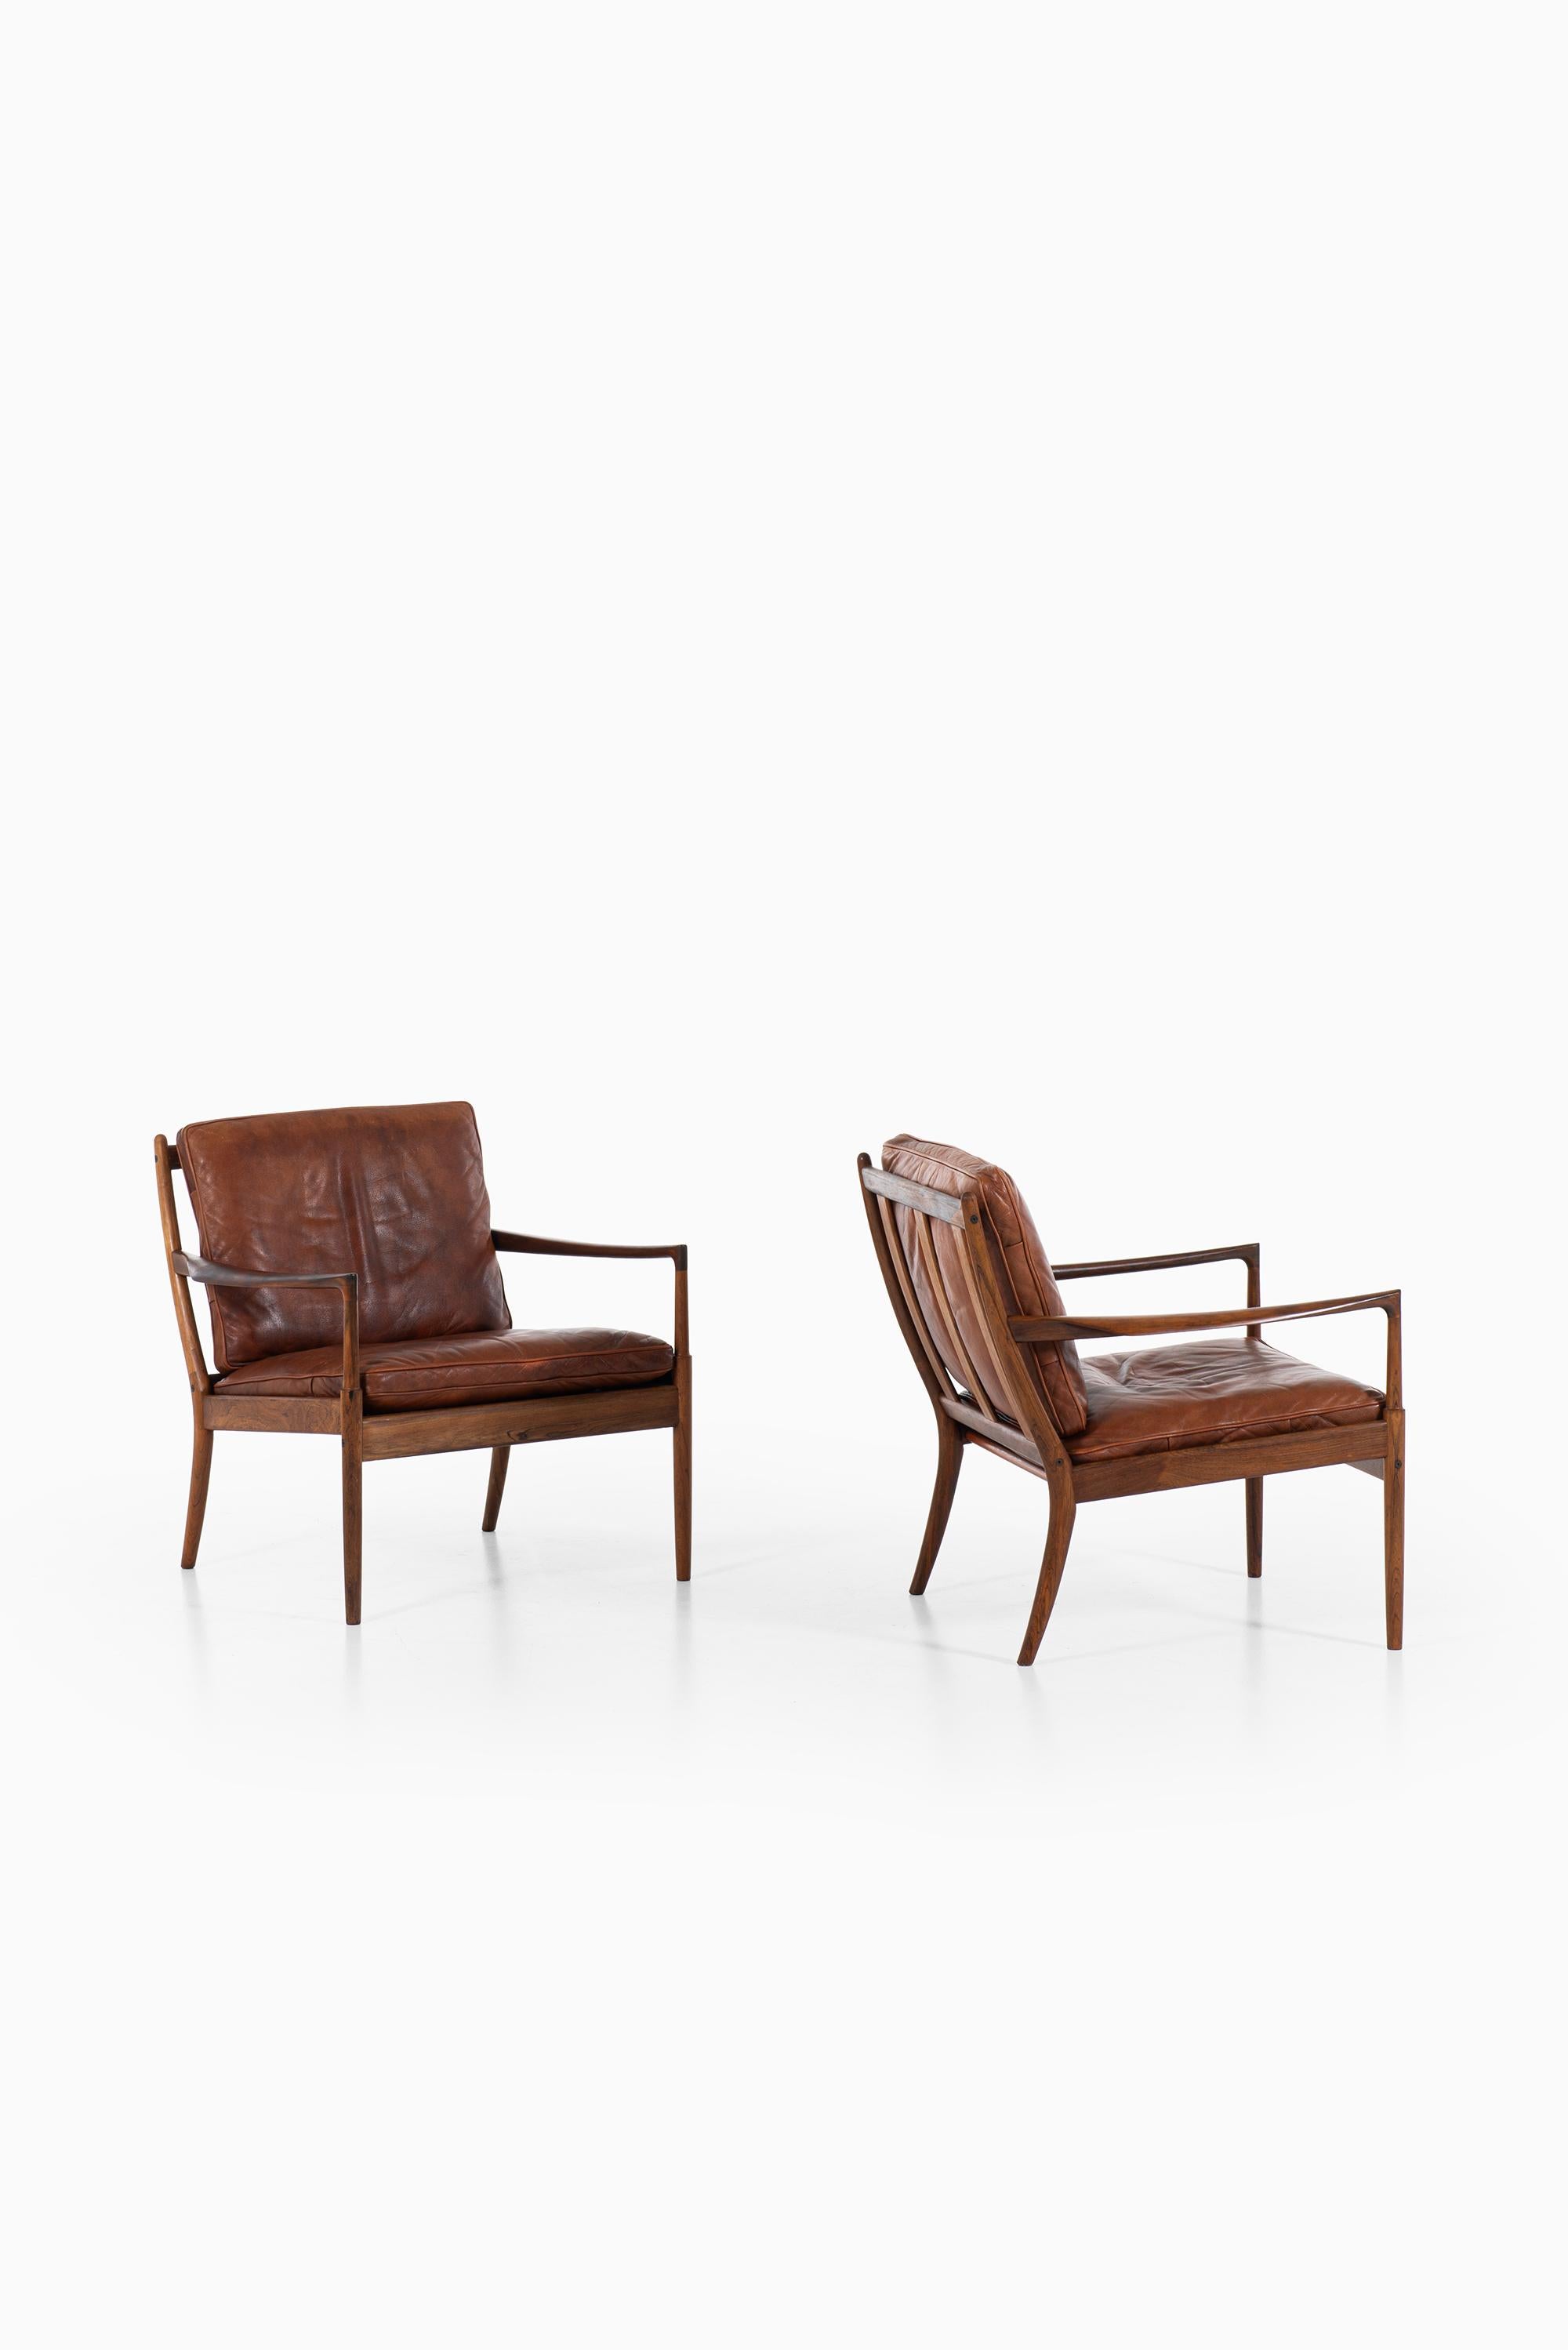 Scandinavian Modern Ib Kofod-Larsen easy chairs model Samsö produced by OPE in Sweden